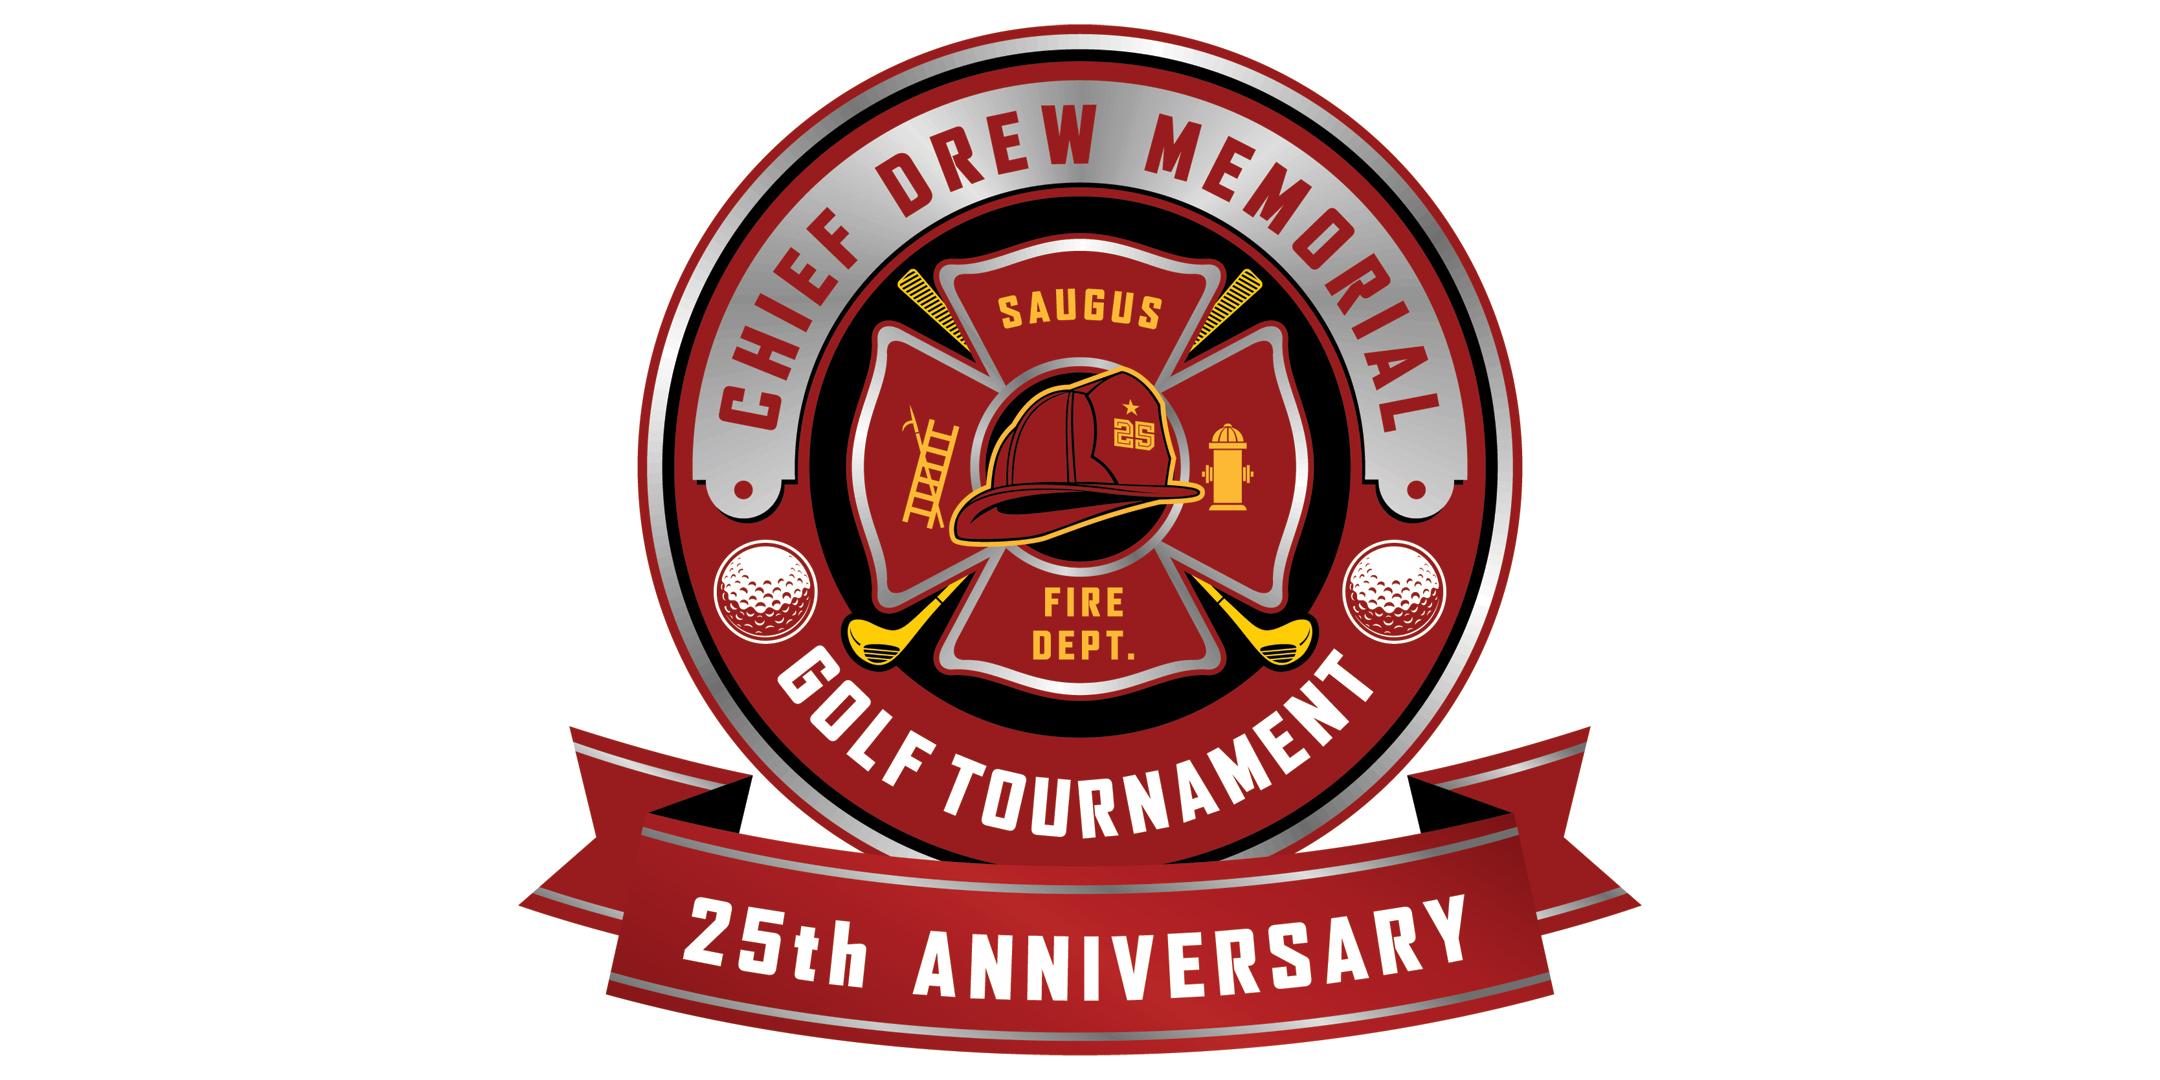 SFD Chief Drew Memorial Golf Tournament